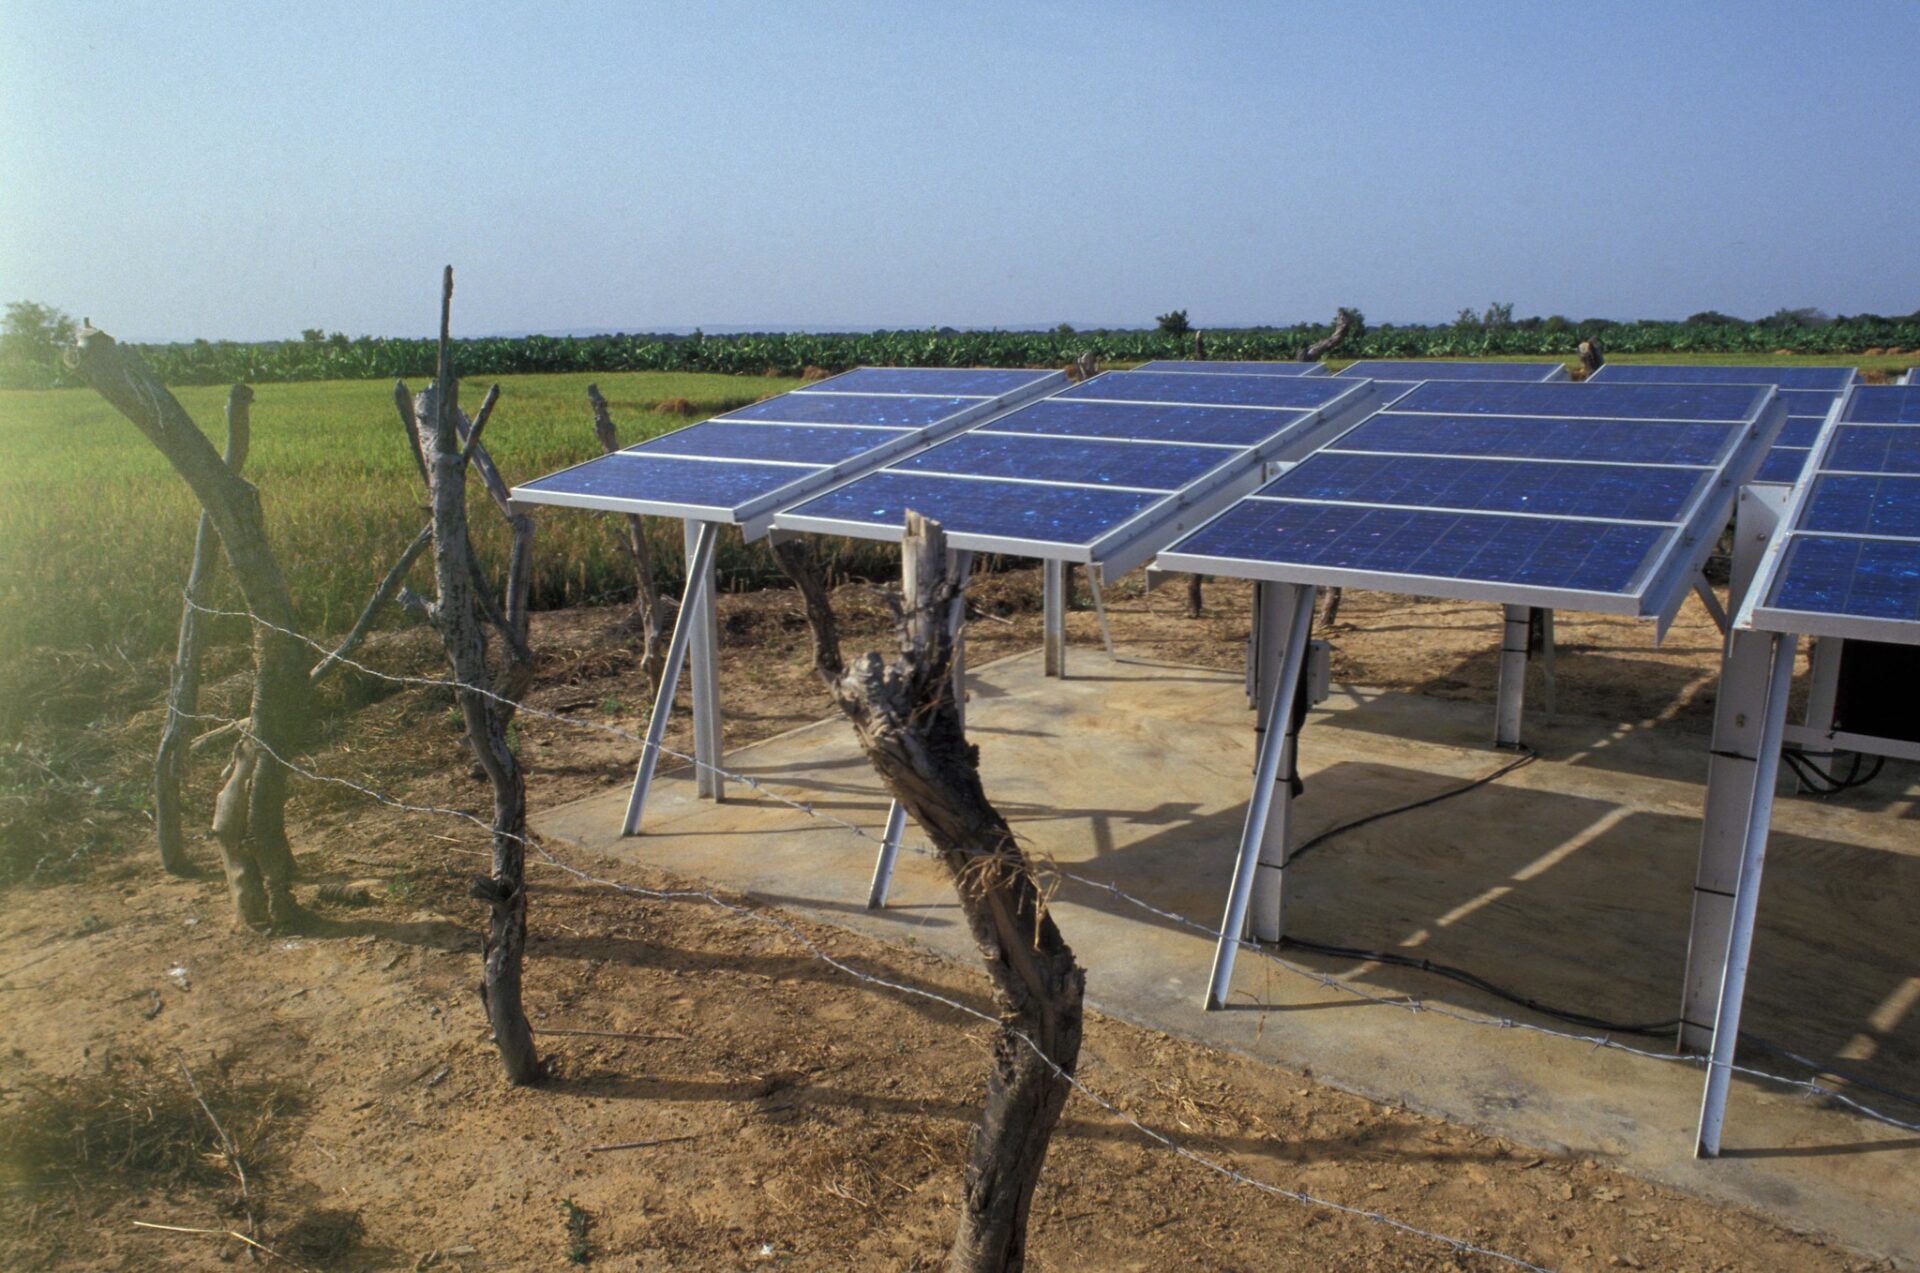 Beaucoup de pays pauvres aimeraient développer davantage leurs sources d'énergie durable | photo: panneaux solaires au Mali © World Bank/Flickr/CC BY-NC-ND 2.0